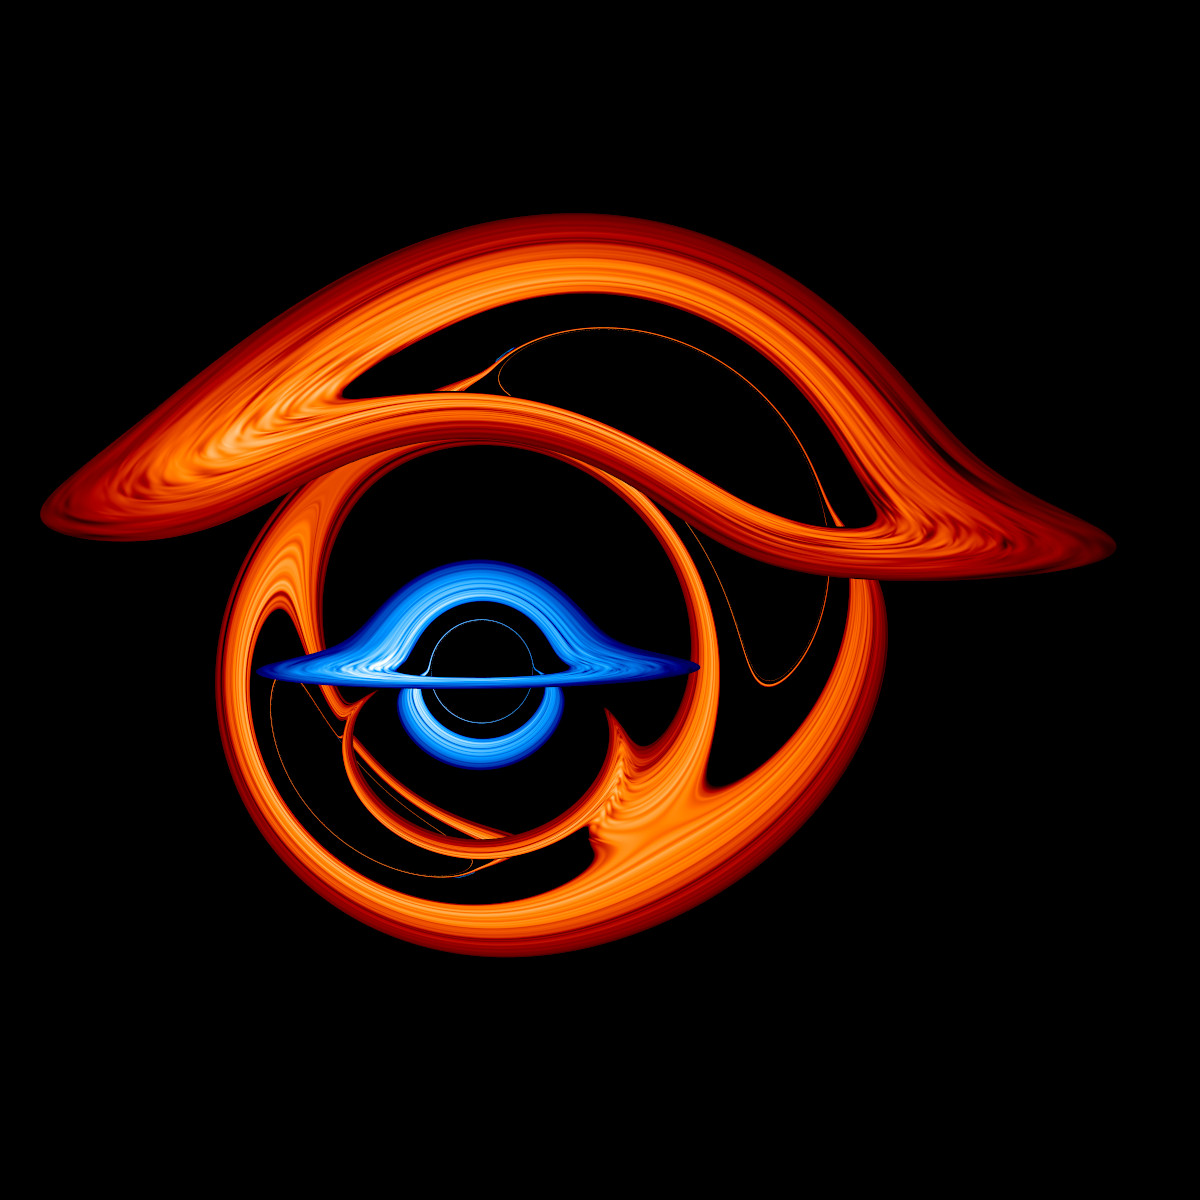 Nasaが新映像を公開 連星ブラックホールのガス円盤はどう見える アストロピクス